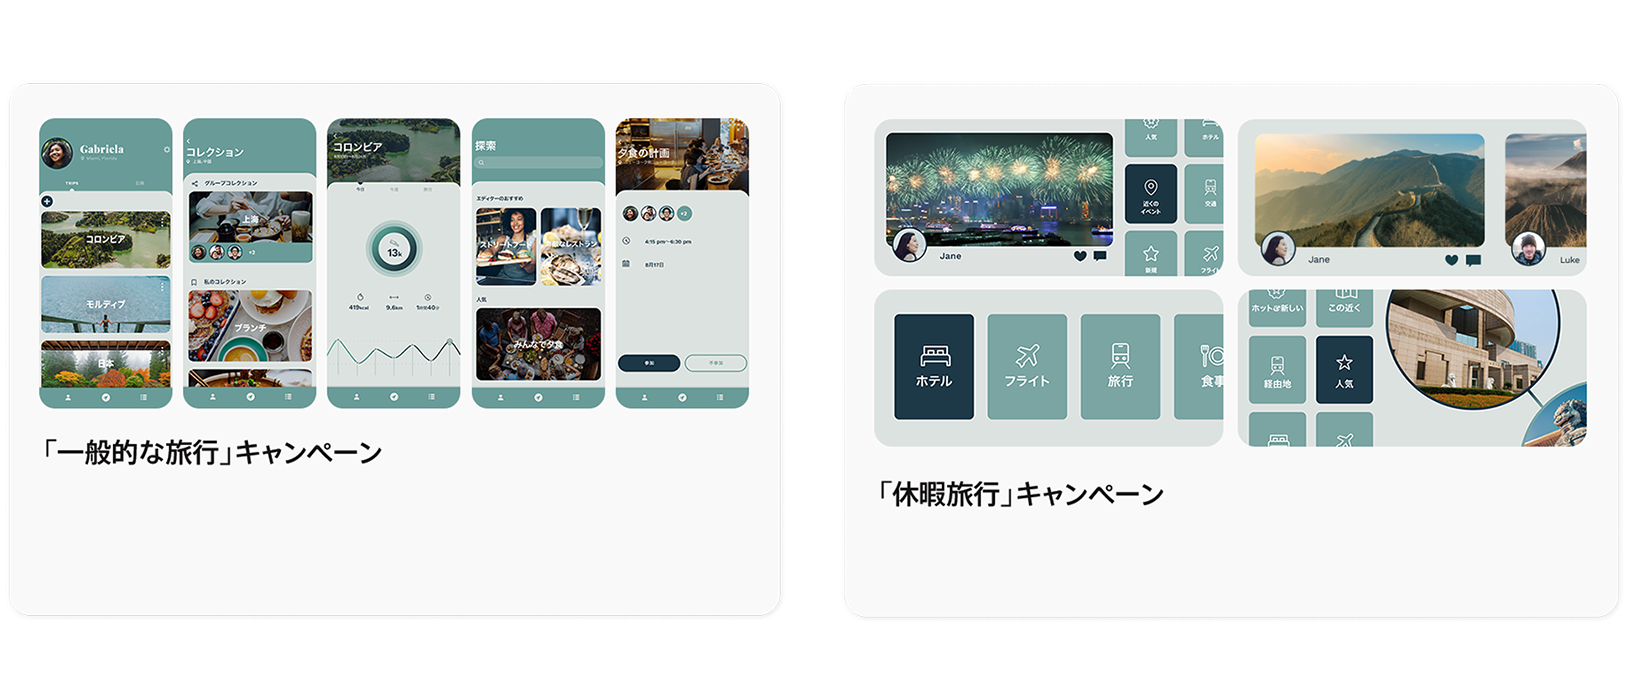 TripTrekというサンプルアプリの2つのTodayタブ広告の例。左側は、アプリの概要を紹介する画像を使った一般的な旅行キャンペーン。右側は、1年のうちのプロモーション期間中に実施する休暇旅行キャンペーン。